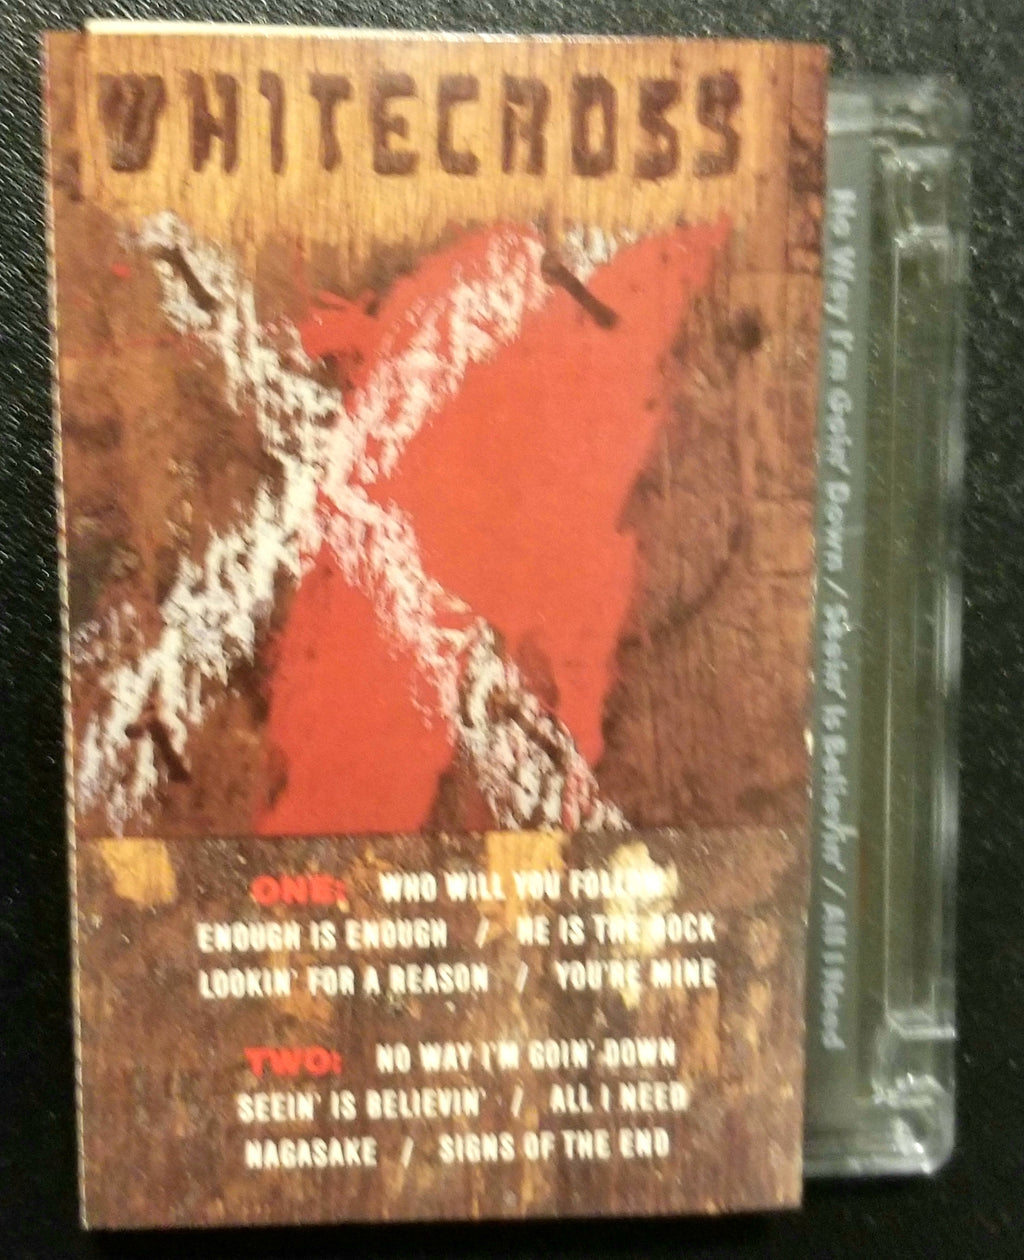 Whitecross Self-Titled, S/T, Same 1987 Cassette